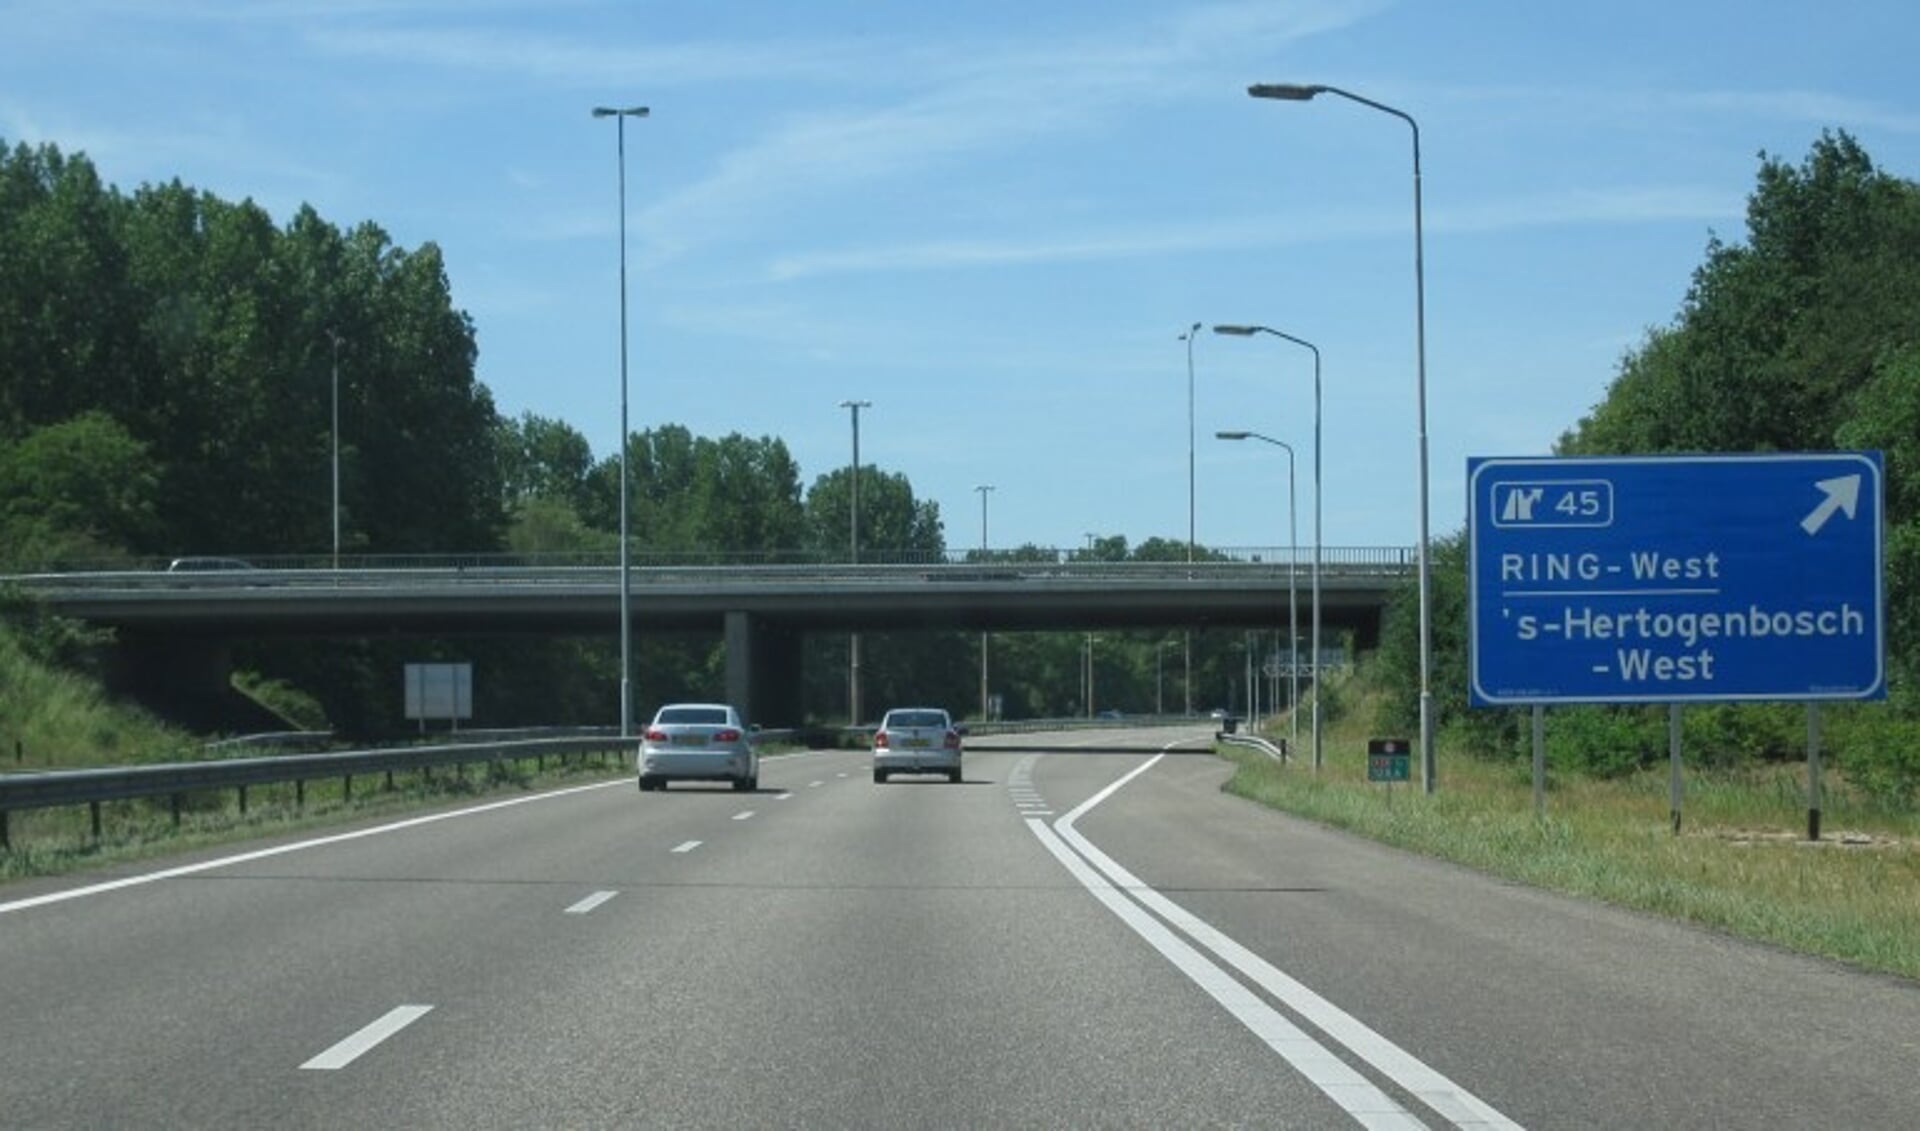  De A59 is afgesloten tussen oprit (45) Ring ’s-Hertogenbosch-West en afrit (47) Maaspoort richting Oss en Utrecht.